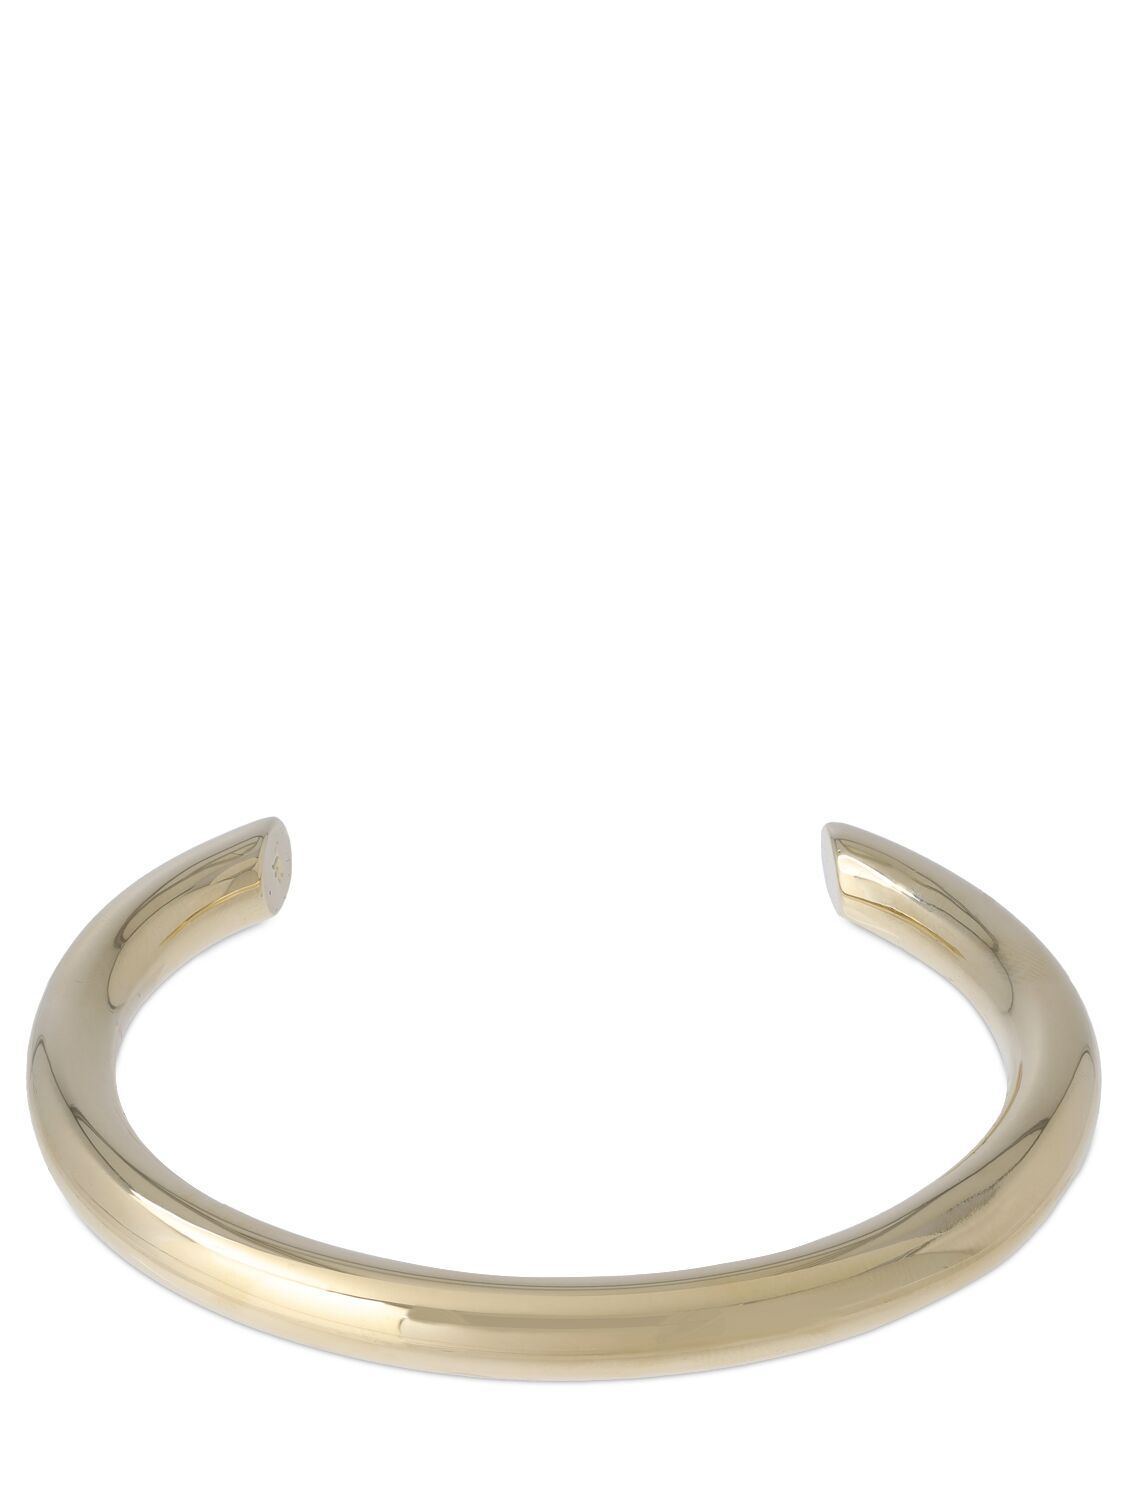 Image of The Samira Slice Cuff Bracelet